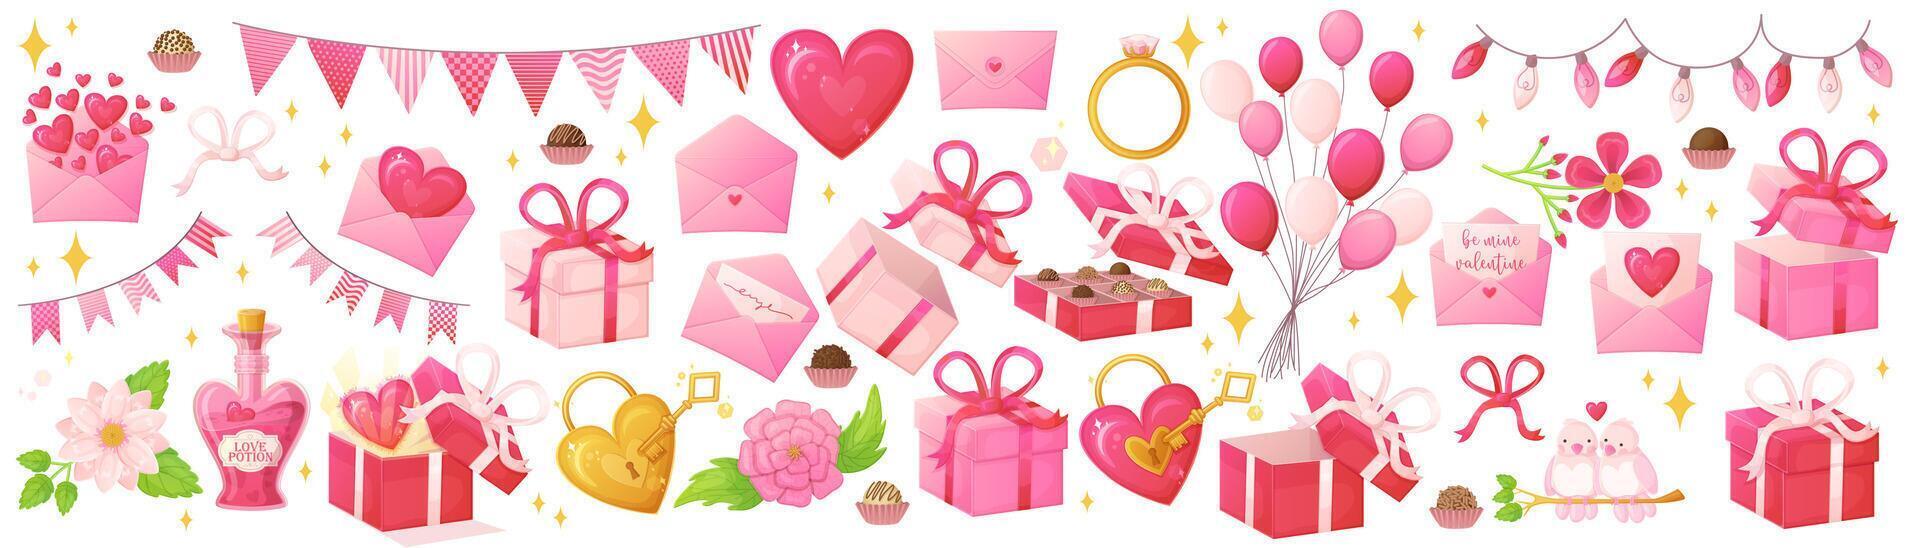 conjunto de objetos de día de san valentín rosa. símbolos de decoración romántica en estilo de dibujos animados realistas. vector